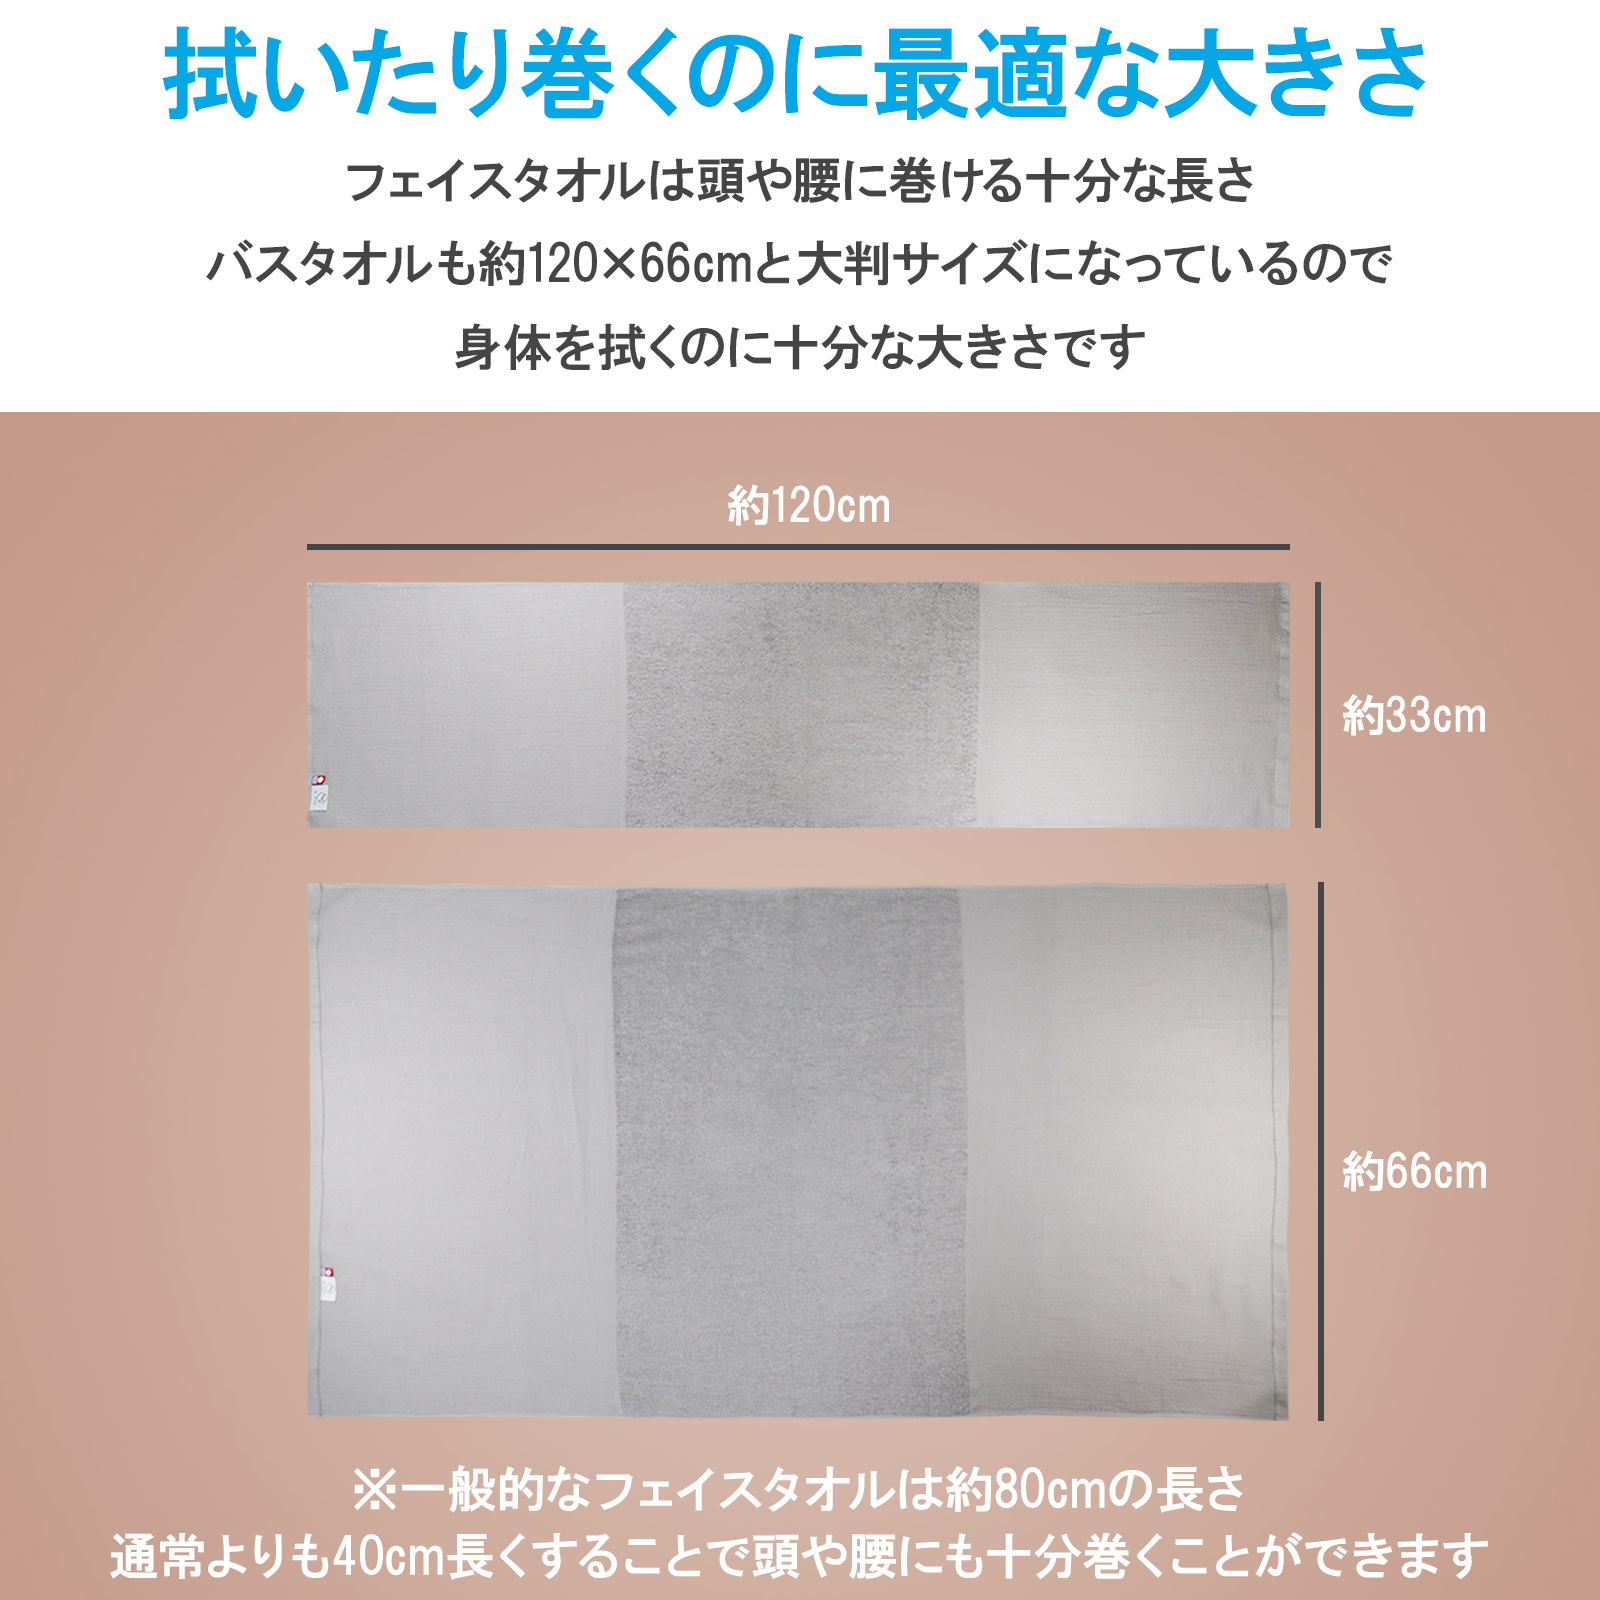 [ now . sauna ] sauna towel now . towel face towel bath towel 2 pieces set large size ... sen hot water speed . made in Japan gray 